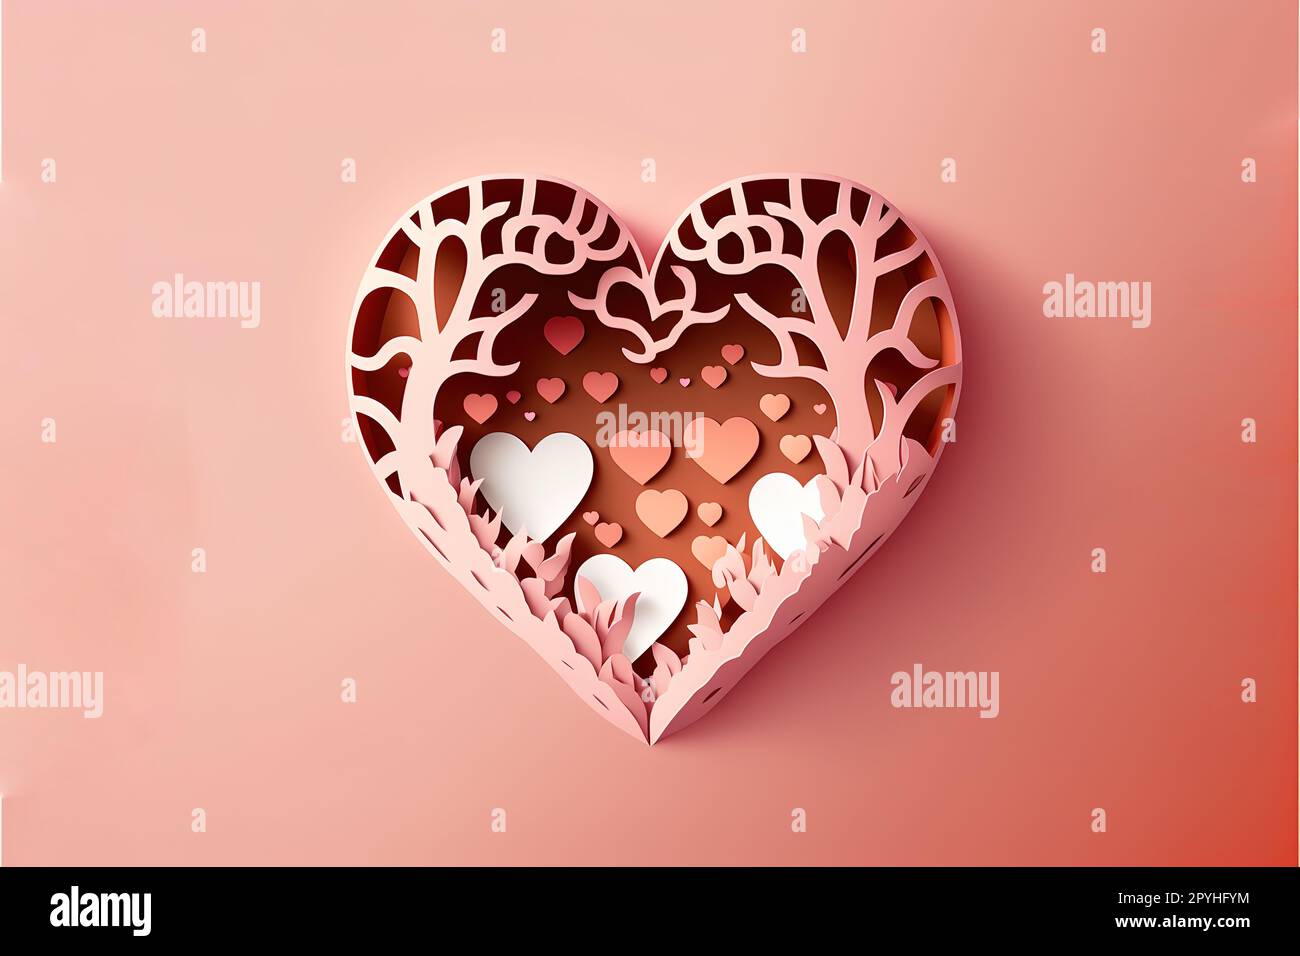 Ausgeschnittenes Vektordesign im Papierstil mit valentinstagsmotiv auf pinkfarbenem, abgestuftem Hintergrund Stockfoto